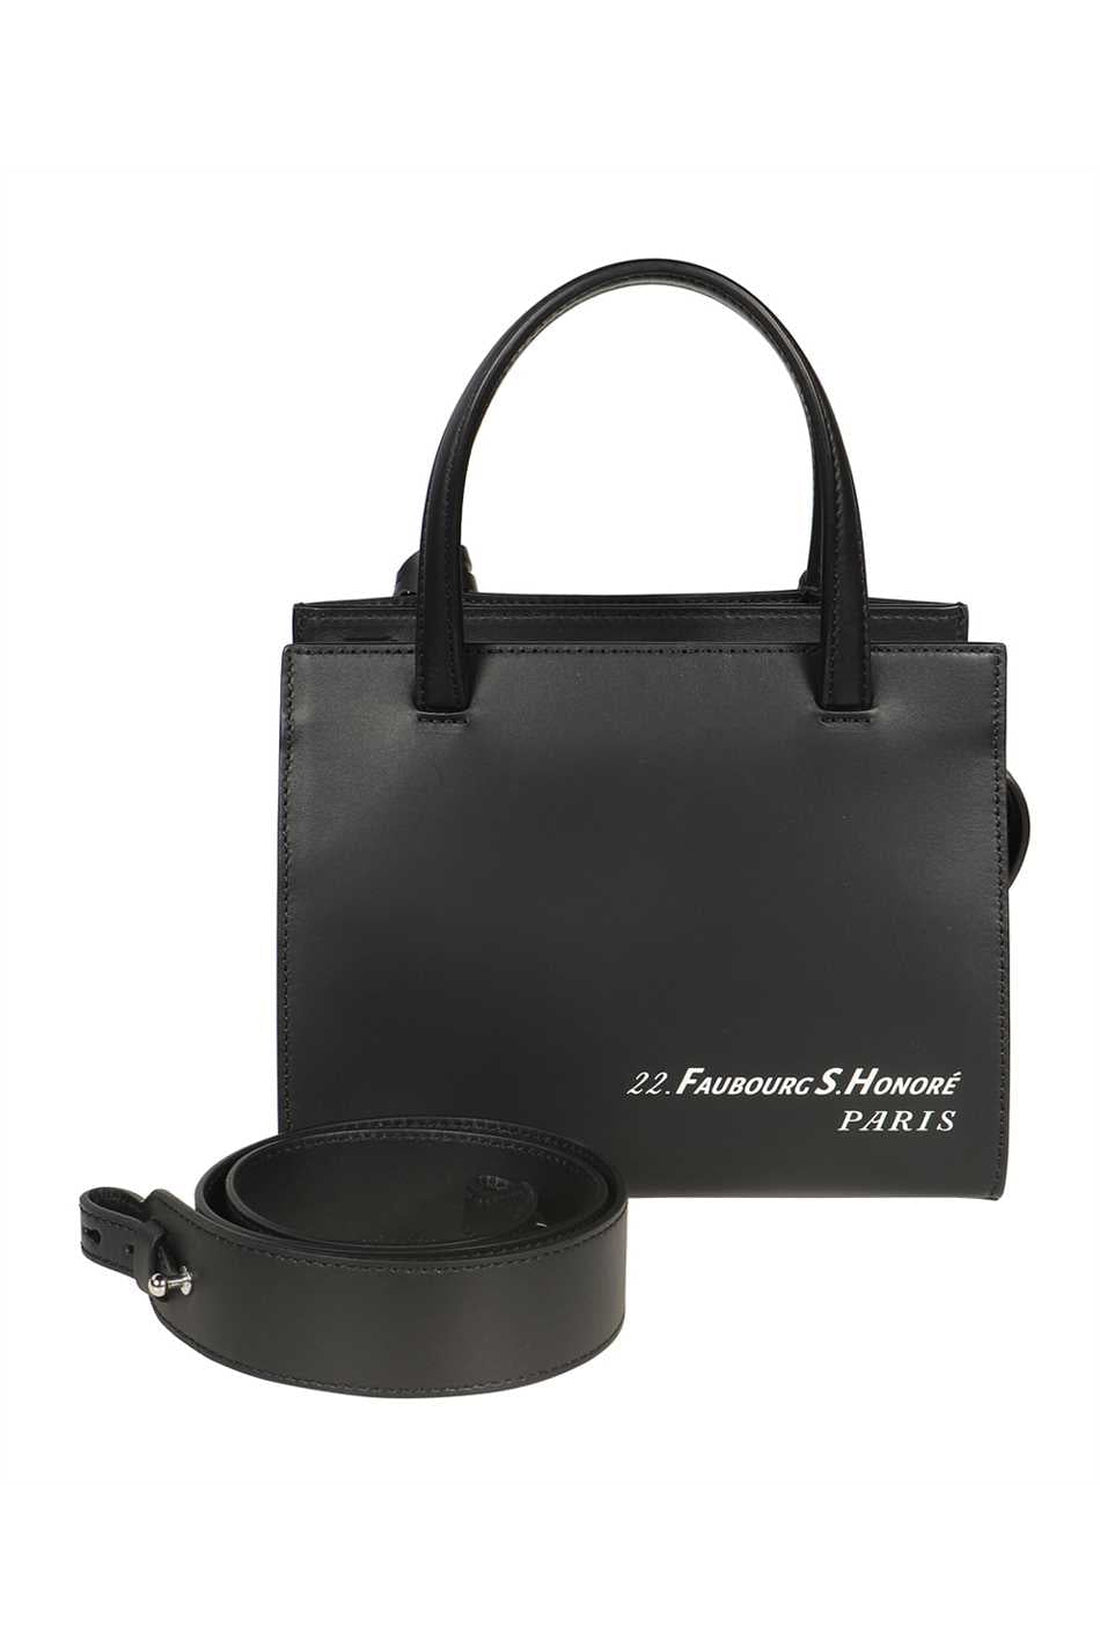 Lanvin-OUTLET-SALE-Logo print leather handbag-ARCHIVIST